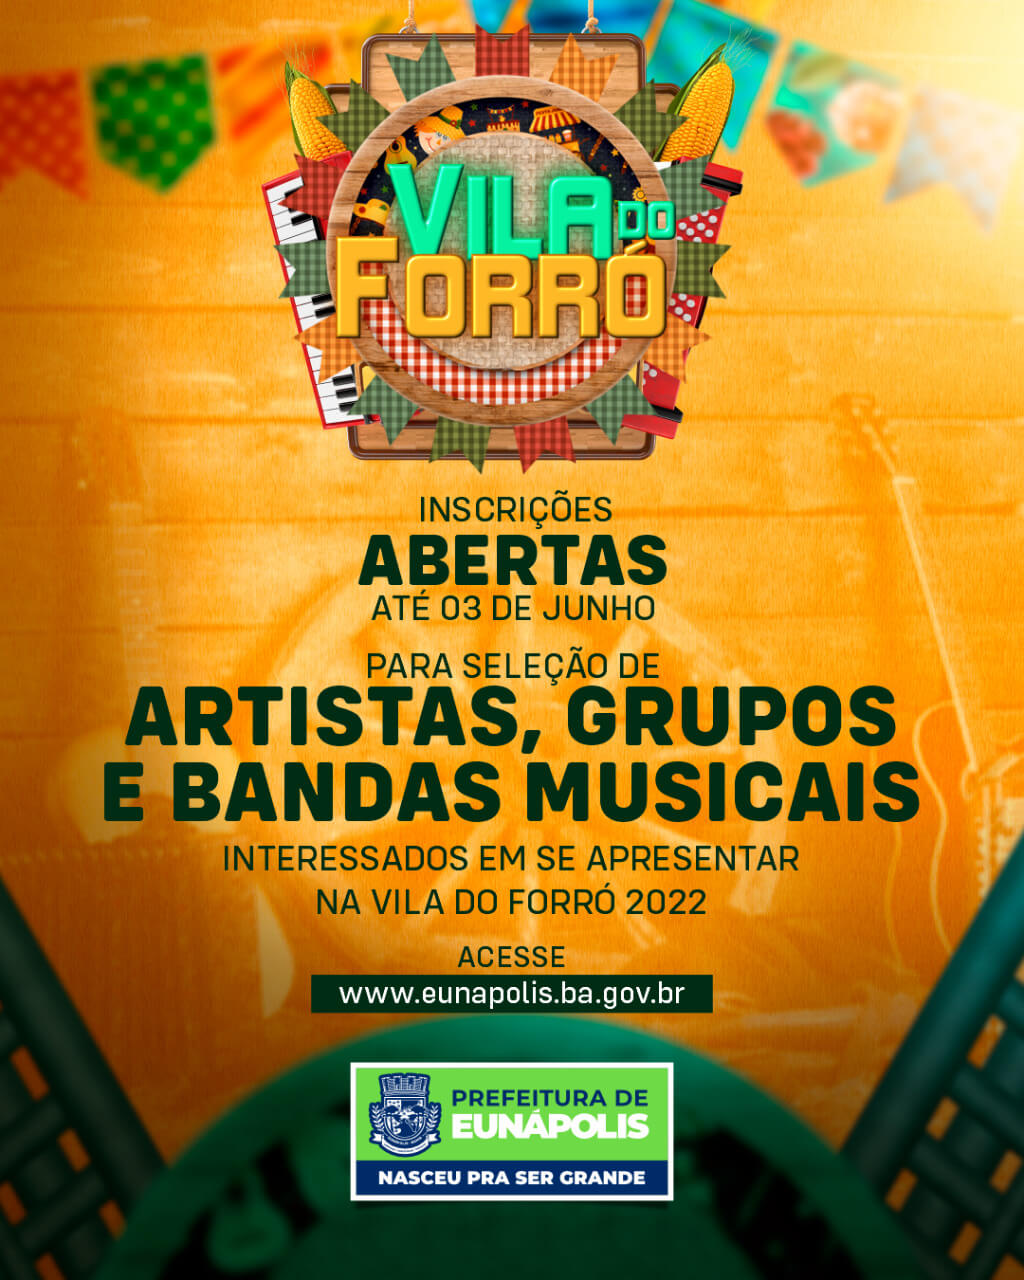 Prefeitura de Eunápolis abre inscrições para artistas interessados em participar da Vila do Forró 2022 18